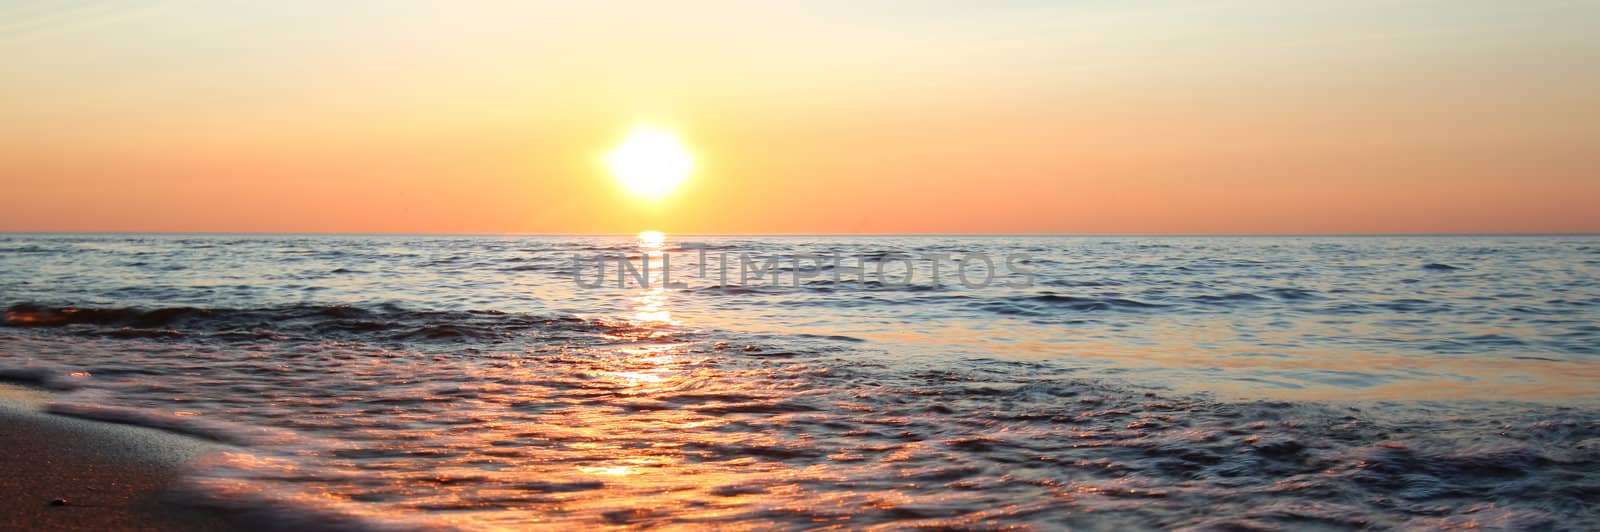 Panoramic view of waves washing ashore at sunset along beautiful Lake Superior.